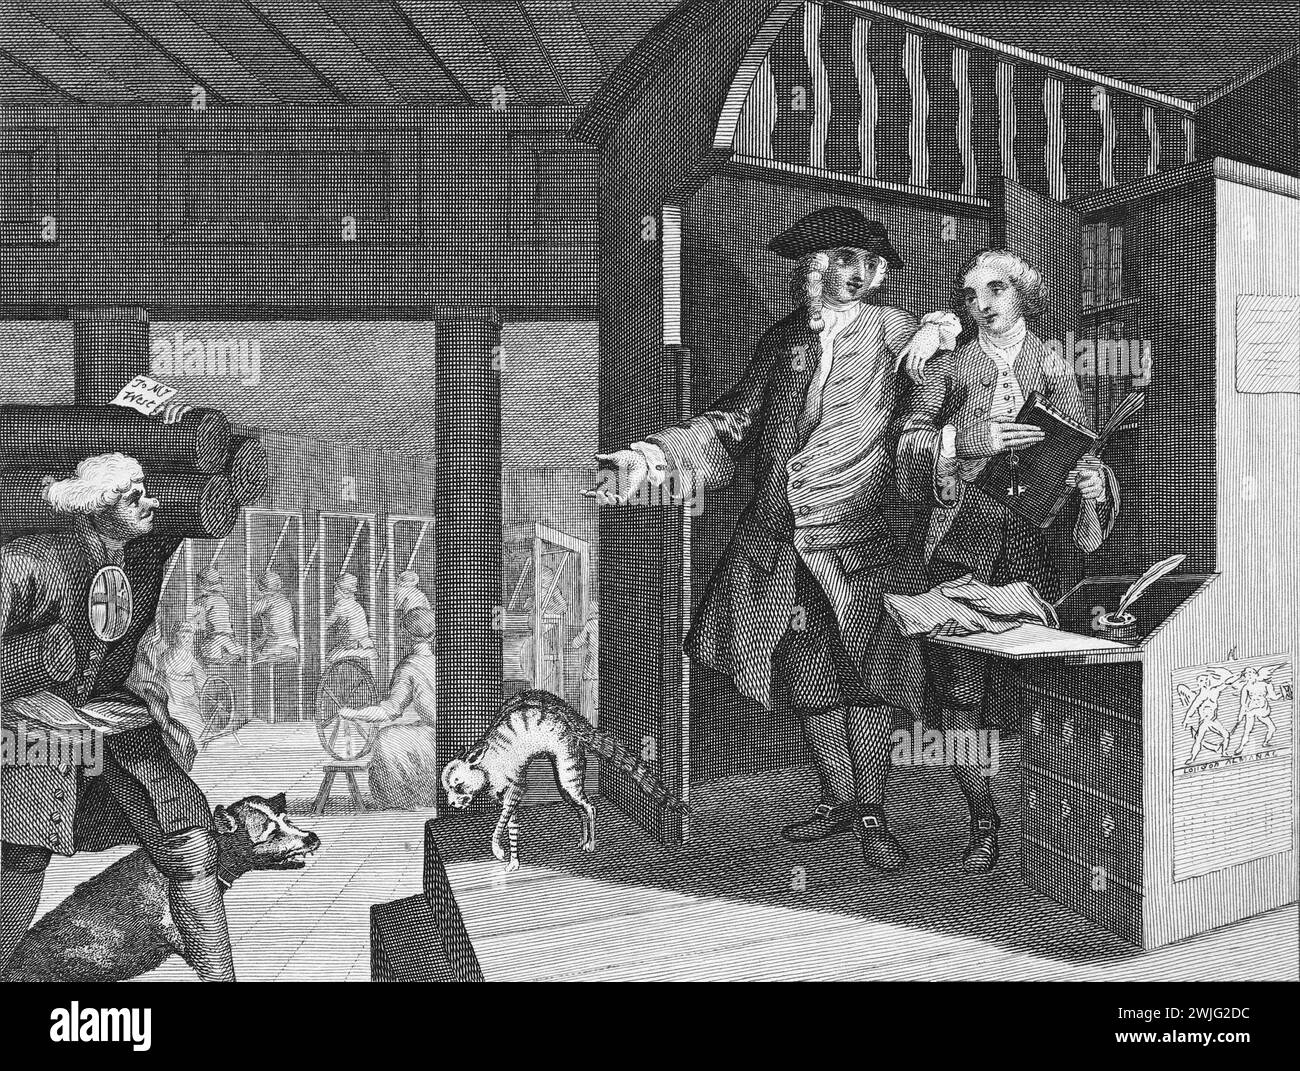 Illustration en noir et blanc : 'L'industrieux 'Prentice Un favori, et confié par son Maître'. Gravure d'après William Hogarth (1697 - 1764) de sa série, "industrie et farniente". Les premières séries d'œuvres peintes de Hogarth, 'The Harlot's Progress' et 'Marriage à-la-mode' qui ont ensuite été publiées en tant que gravures, 'Industry and Fidleness' a été gravée dès le début. L'objectif de Hogarth dans cette série était d'illustrer les récompenses possibles pour travailler dur, et les pièges de ne pas le faire, un message principalement destiné aux enfants qui travaillent. Cette reproduction a été réalisée par Thomas Cook ; 1806. Banque D'Images